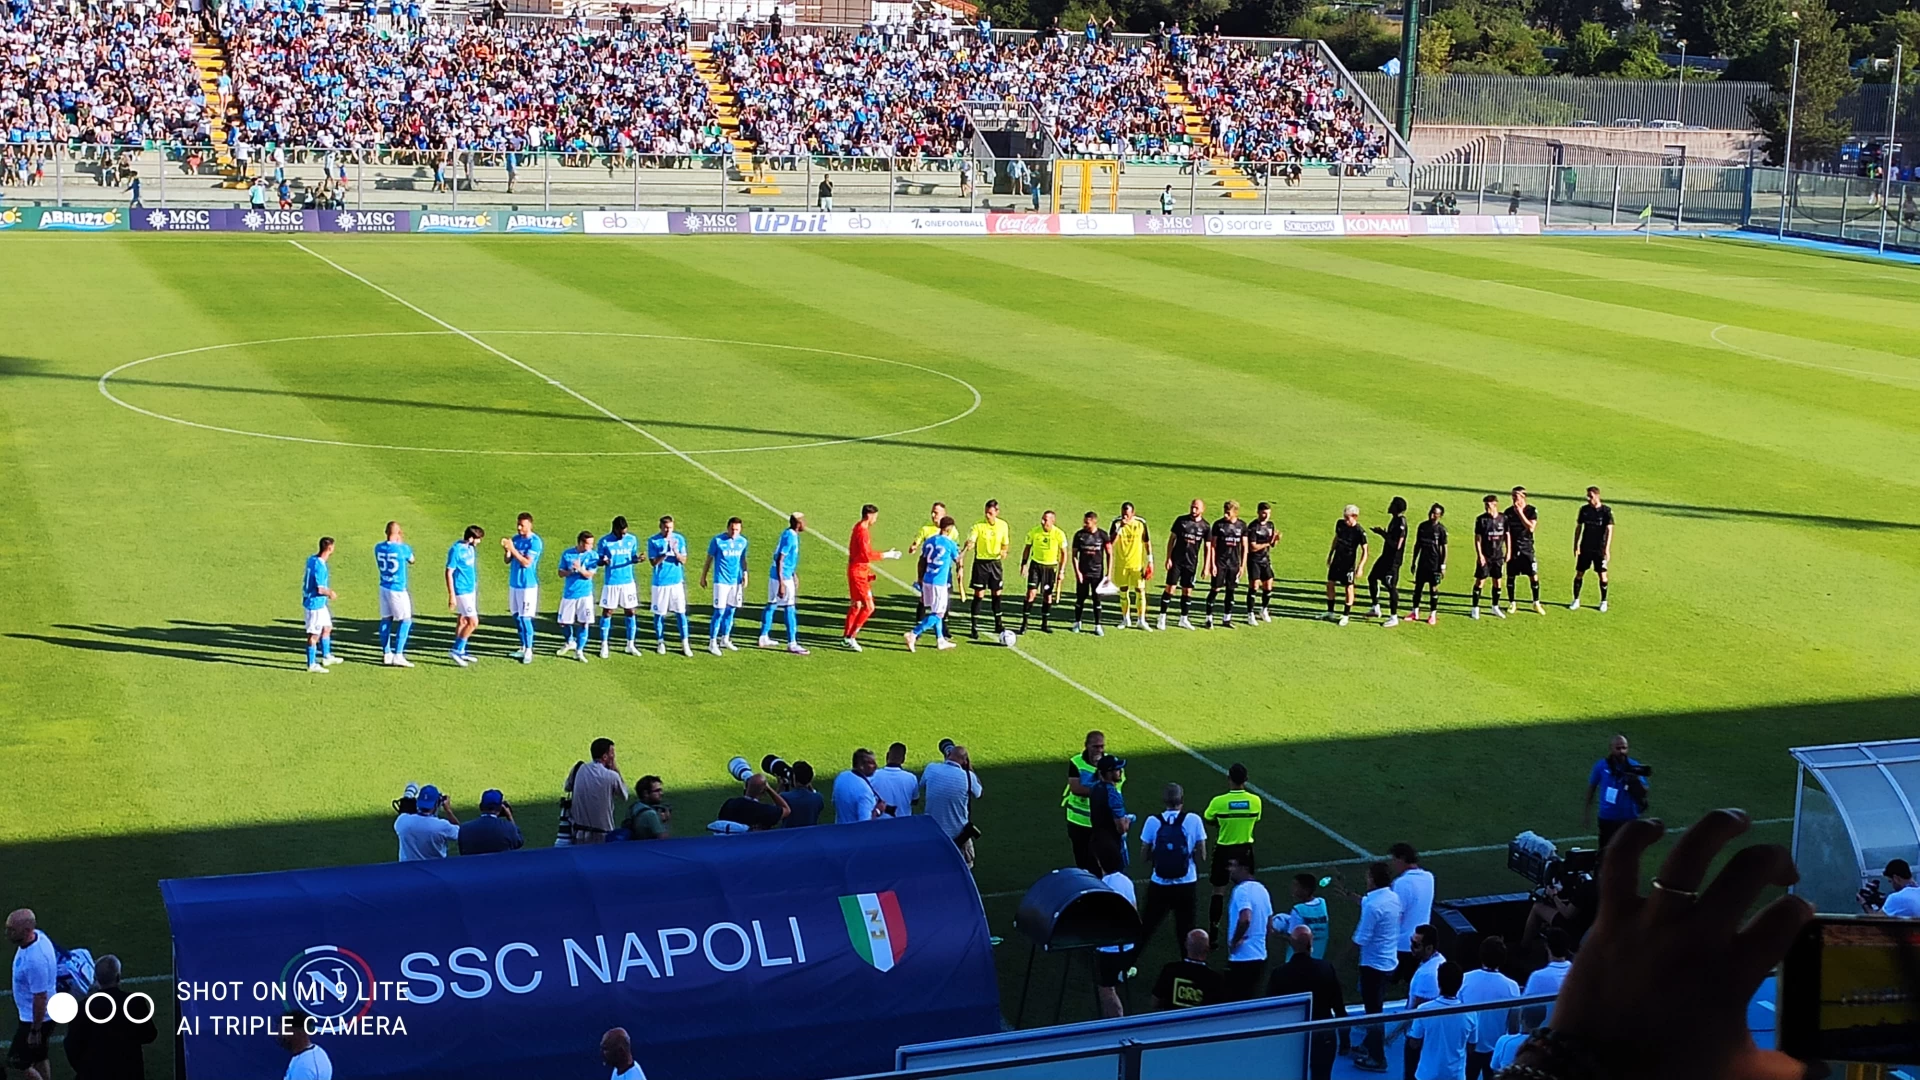 Napoli-Hatayspor: tabellino e cronaca del match. Finisce 4-0 per gli azzurri